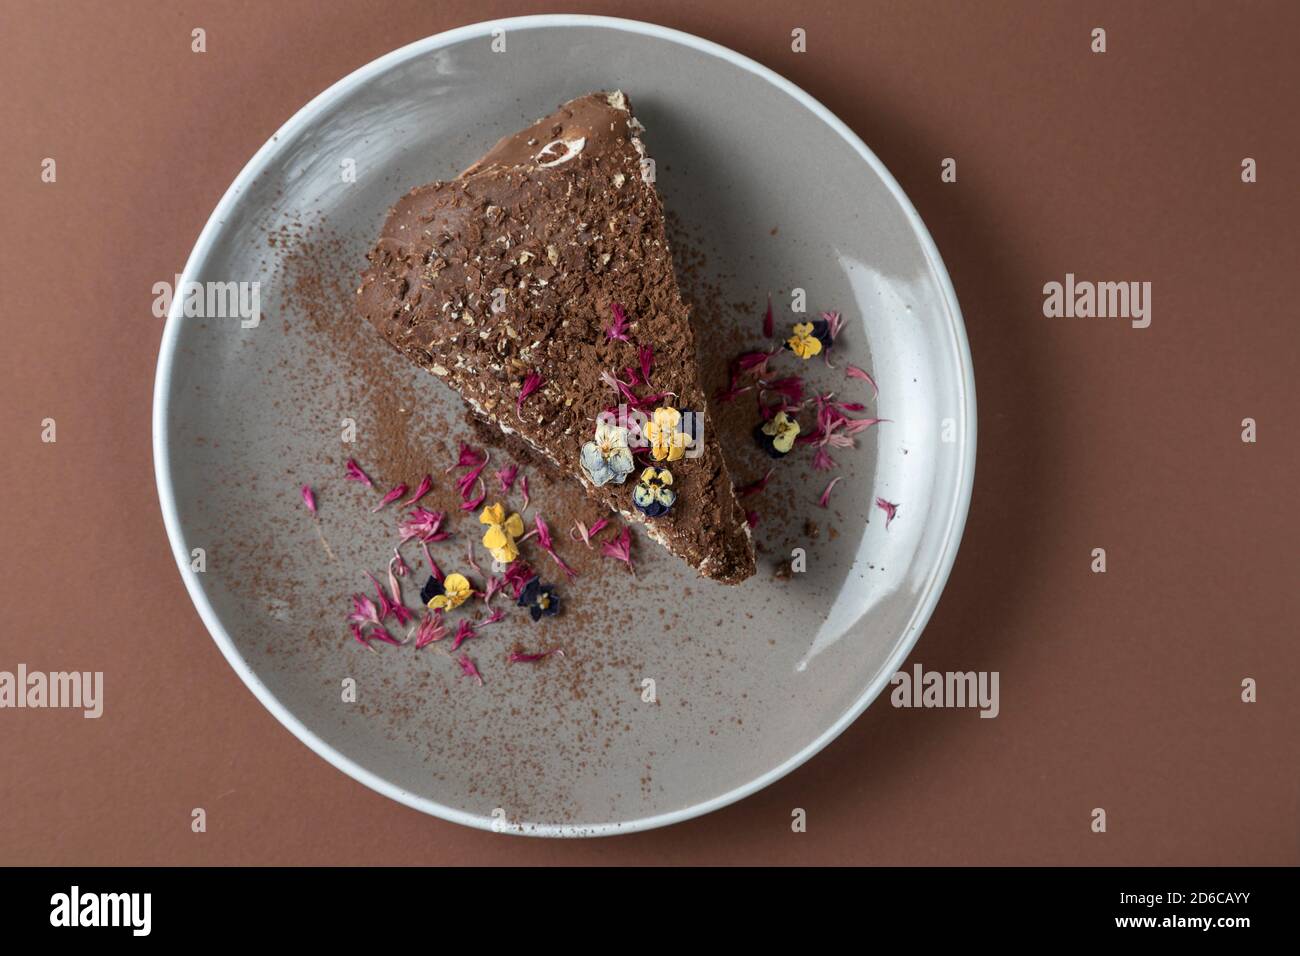 Vue de dessus d'un morceau de gâteau au chocolat avec des fleurs comestibles. Vue douce Banque D'Images